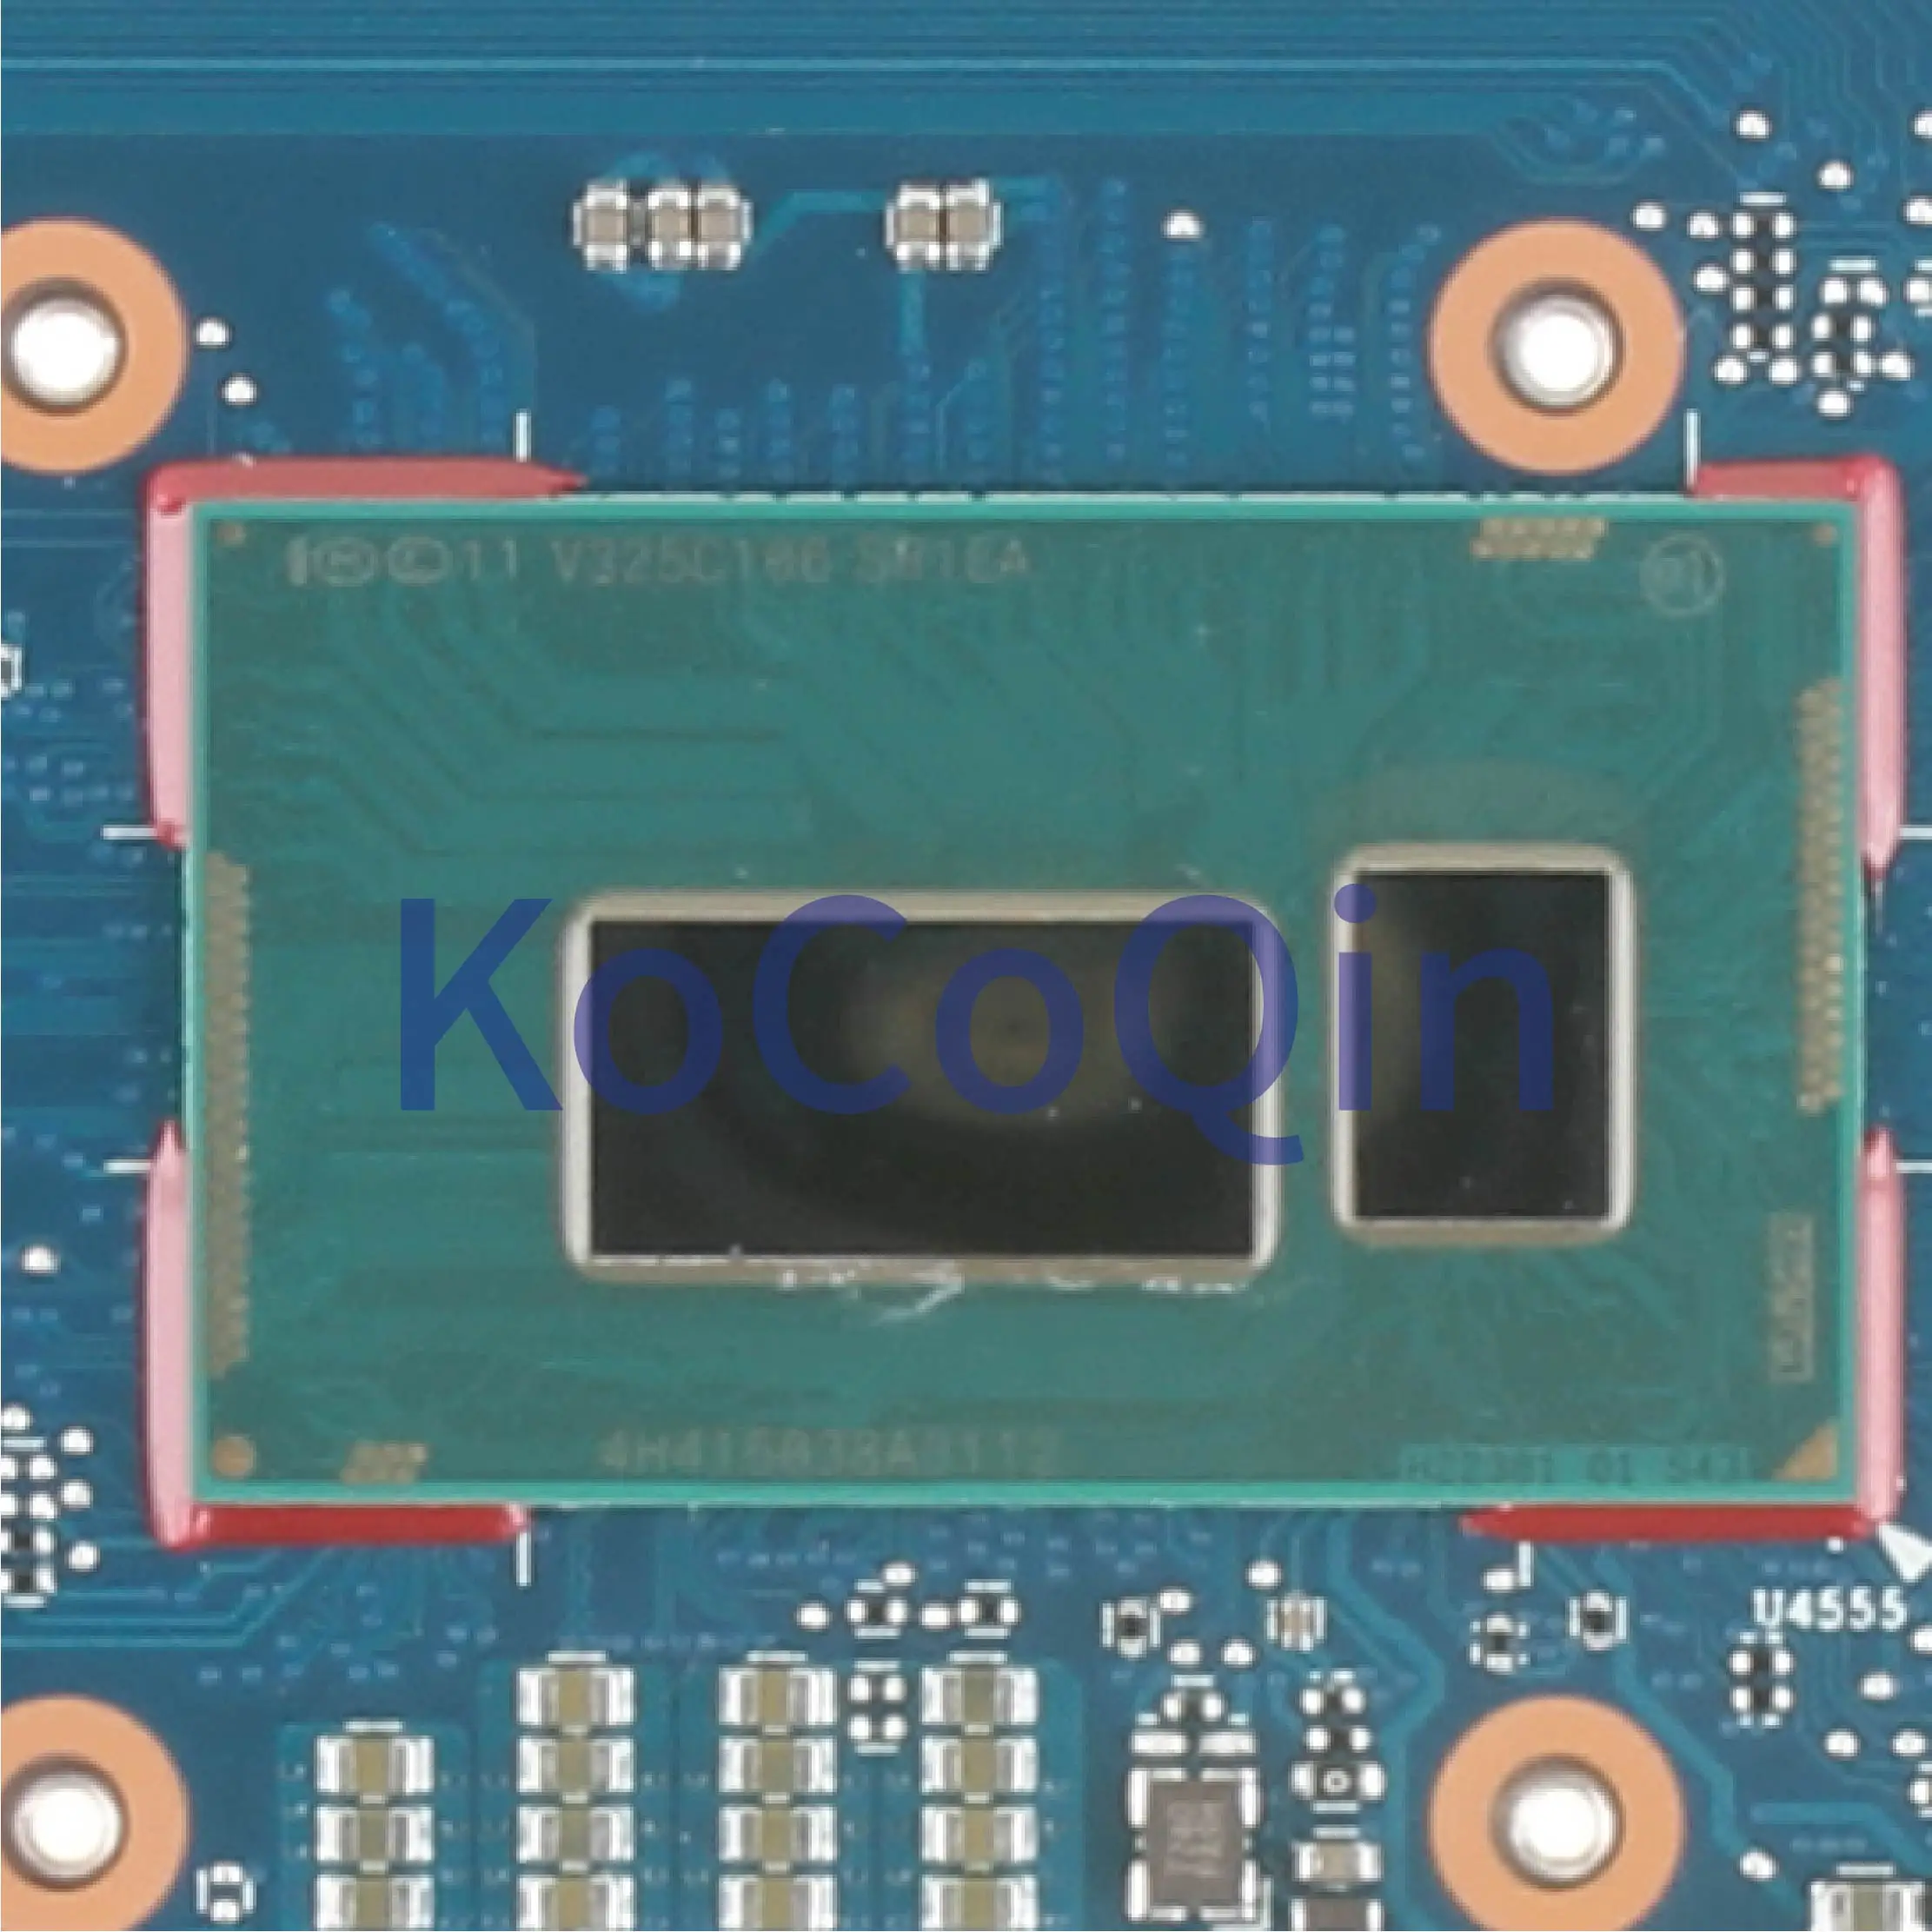 KoCoQin placa de baza Pentru Laptop HP Elitebook 720 820 G1 Core I7-4600U Placa de baza 6050A2630701-MB-A01 802499-001 802499-601